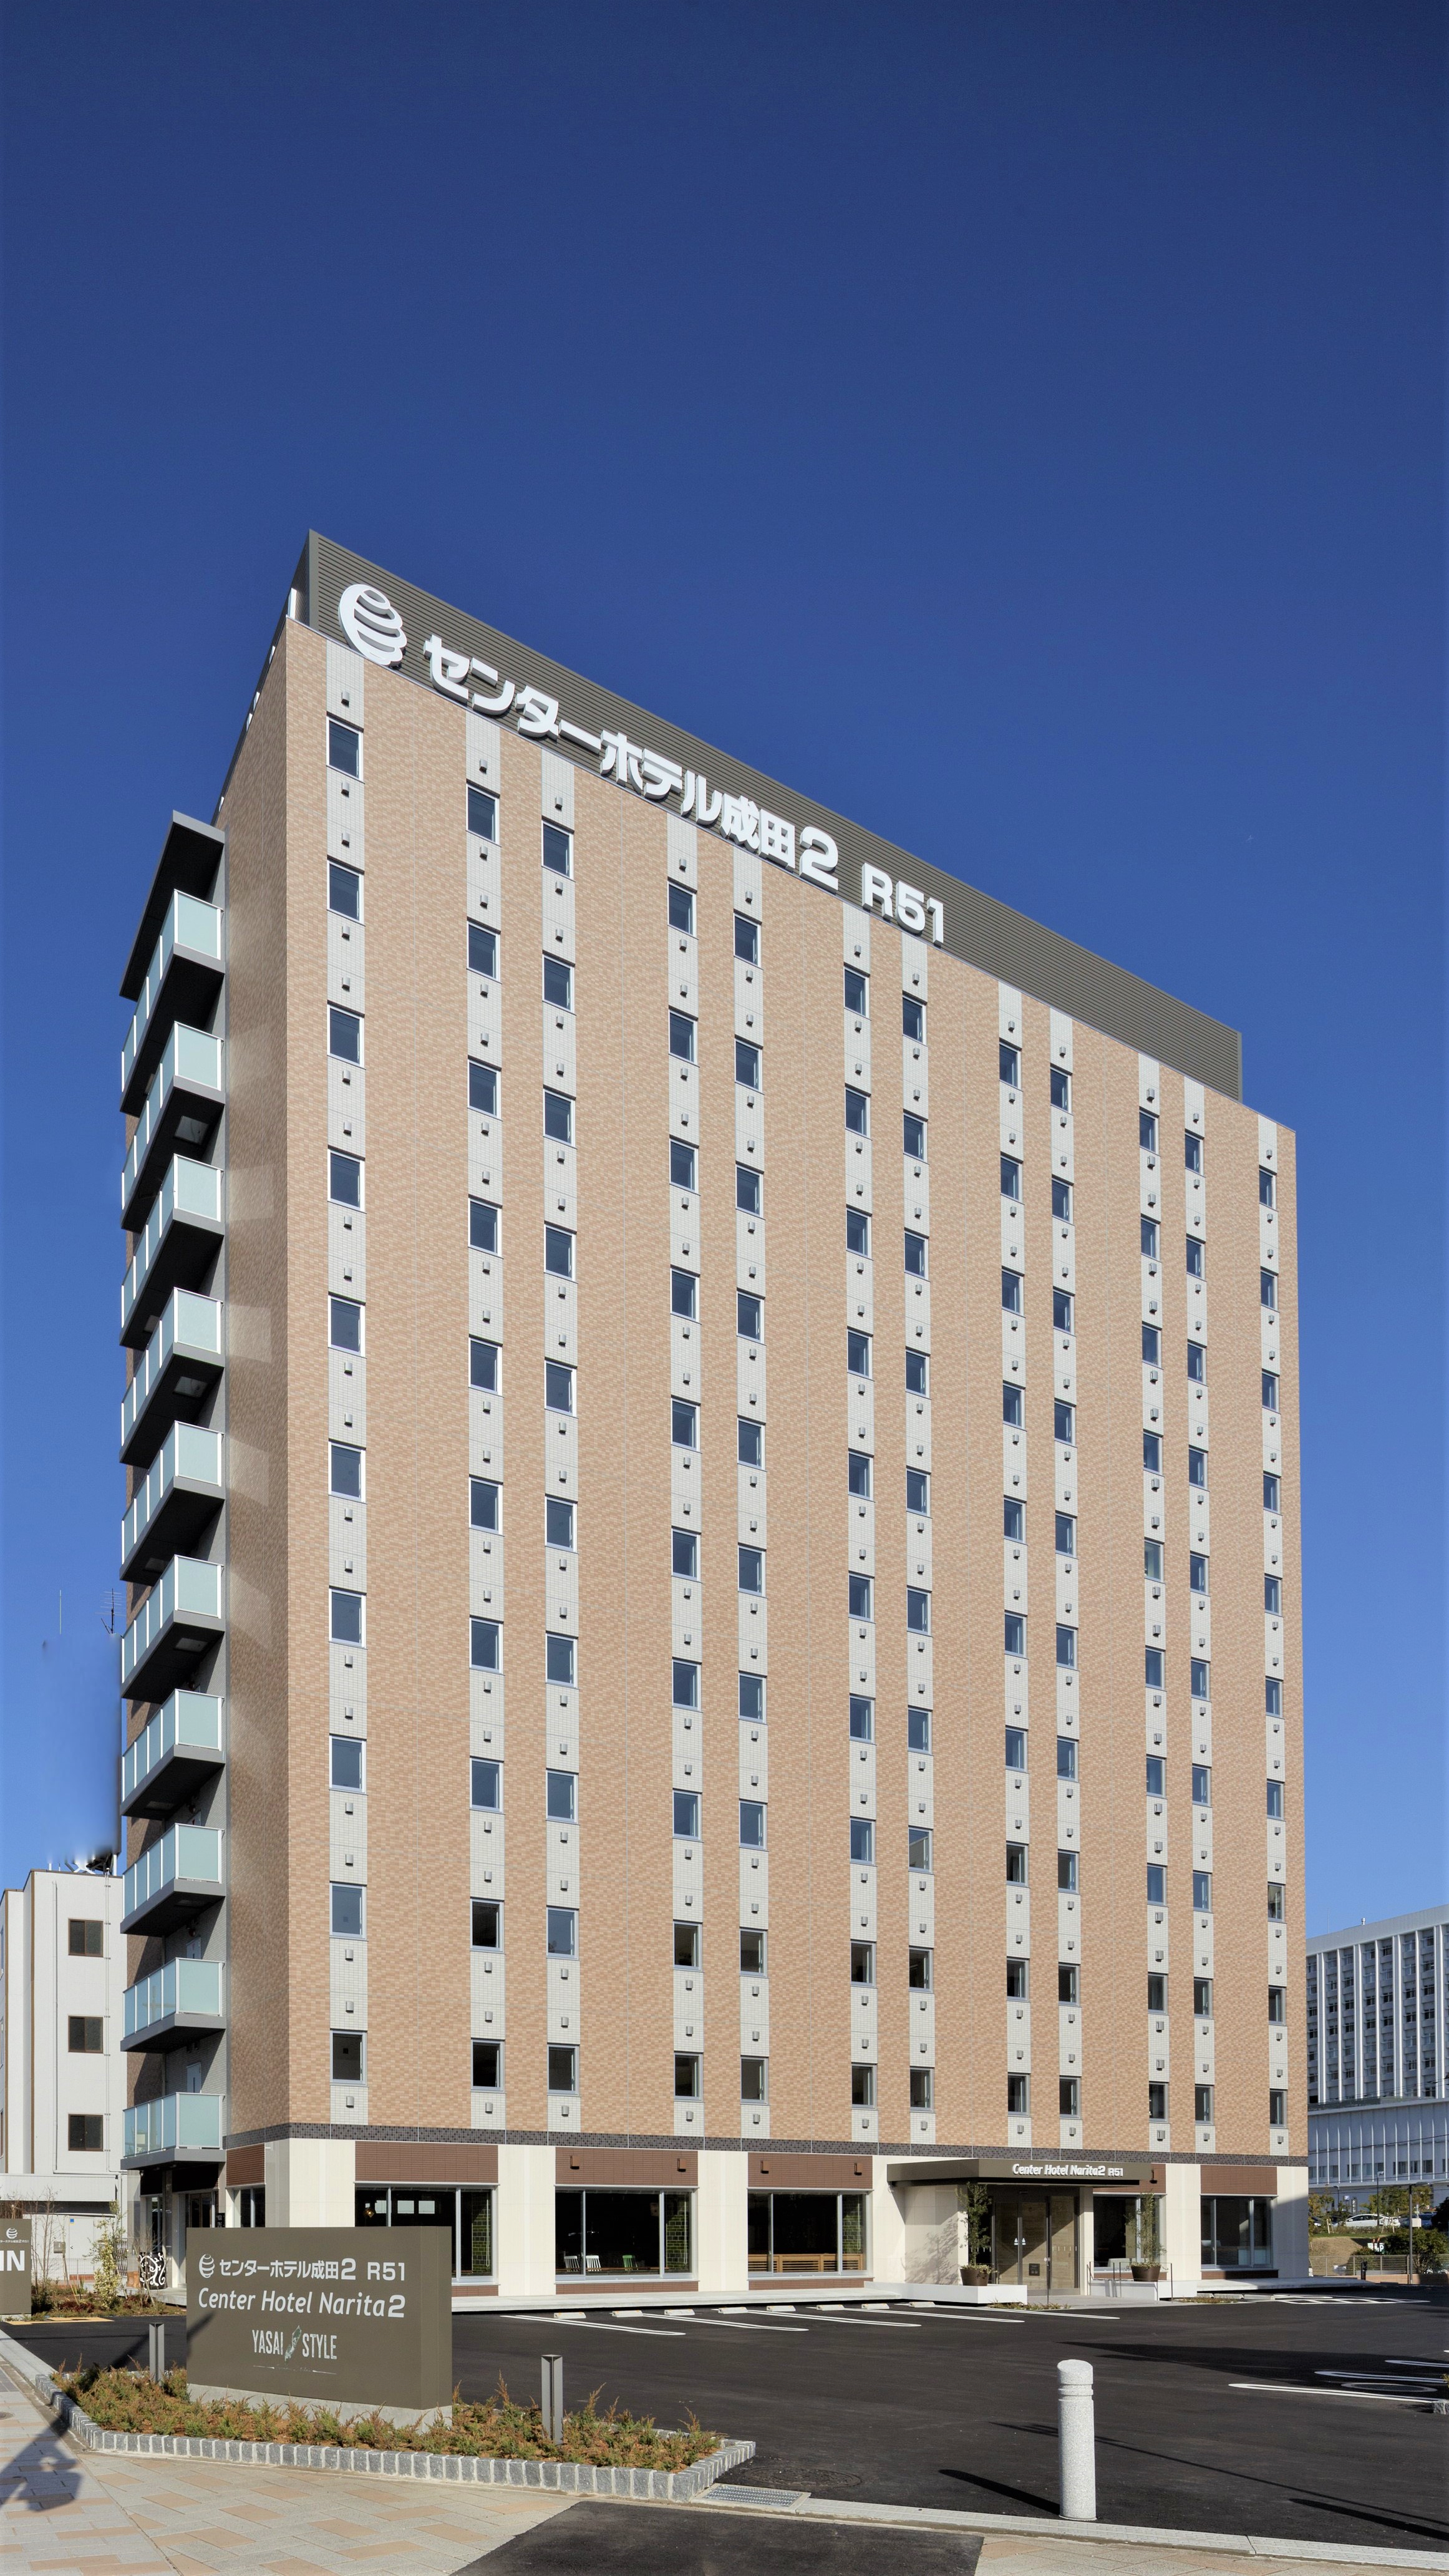 Center Hotel Narita 2 R51